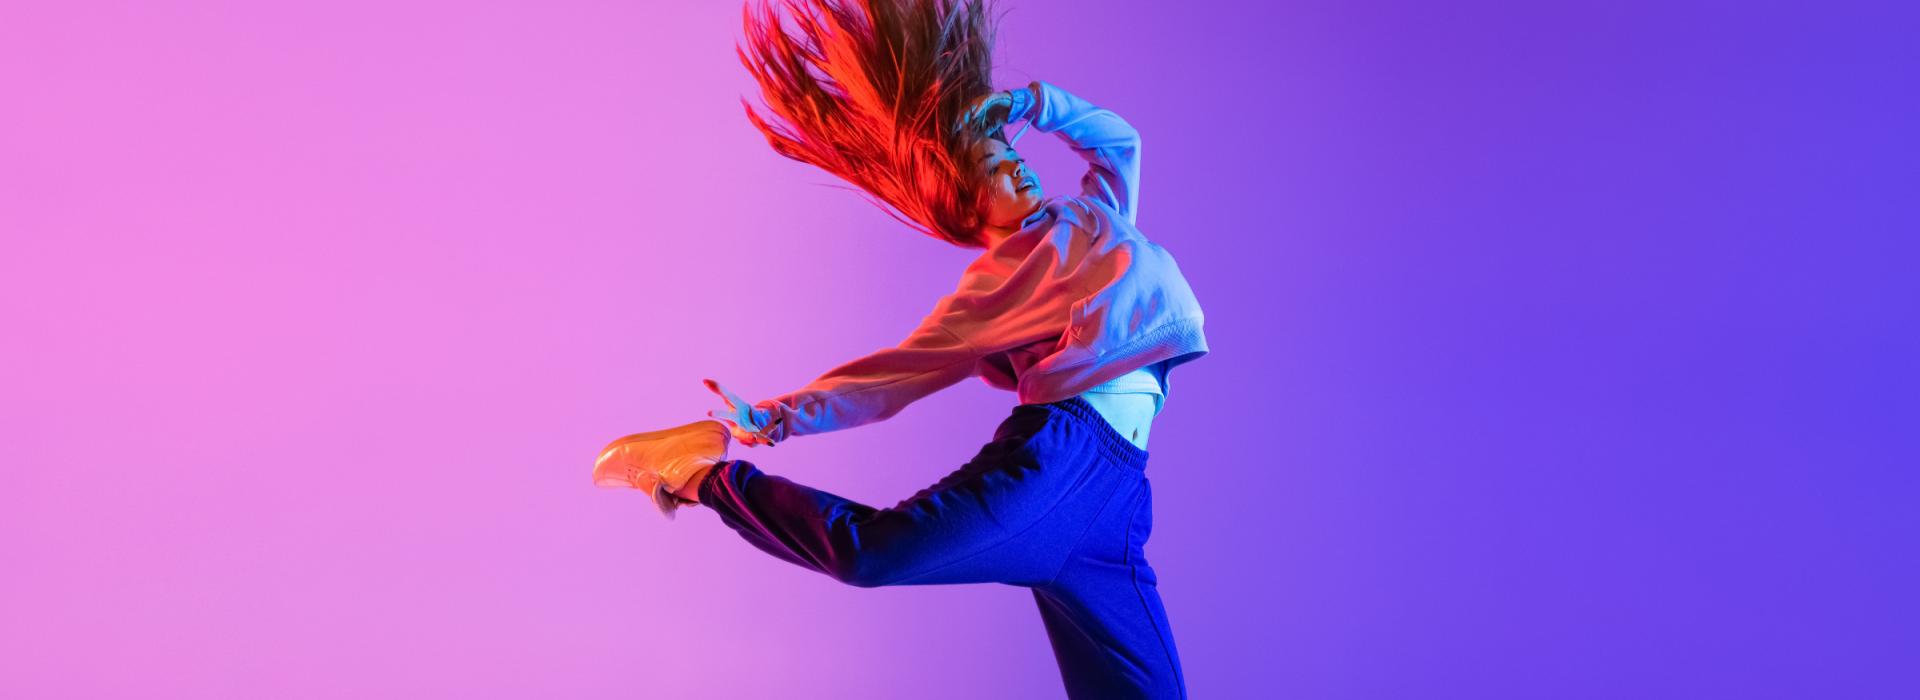 Zeigt eine tanzende, junge Frau vor einem Pink-Blauen Hintergrund